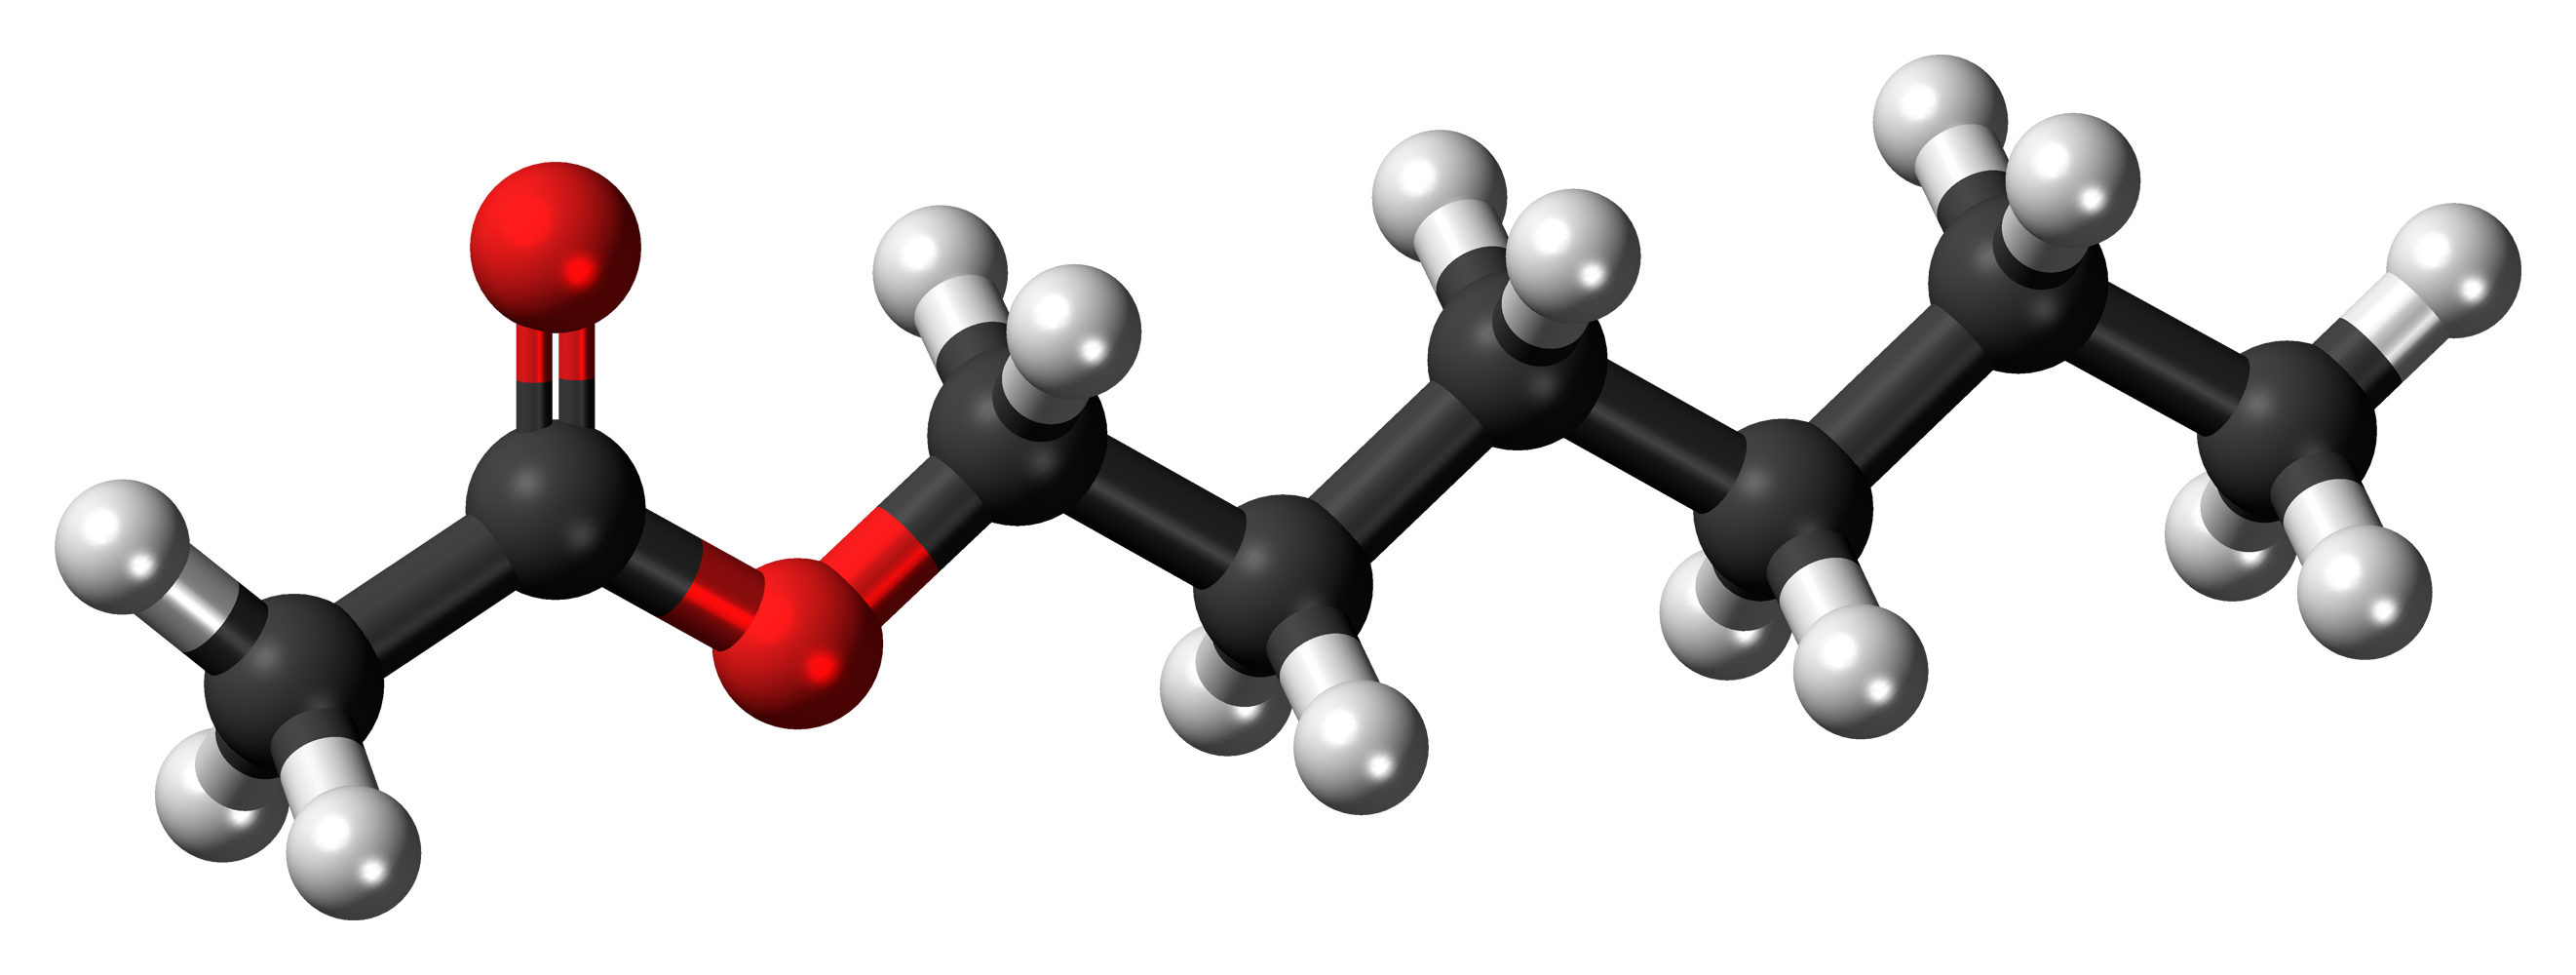 Tổng quan về hóa chất Hexyl acetate trong thực tiễn